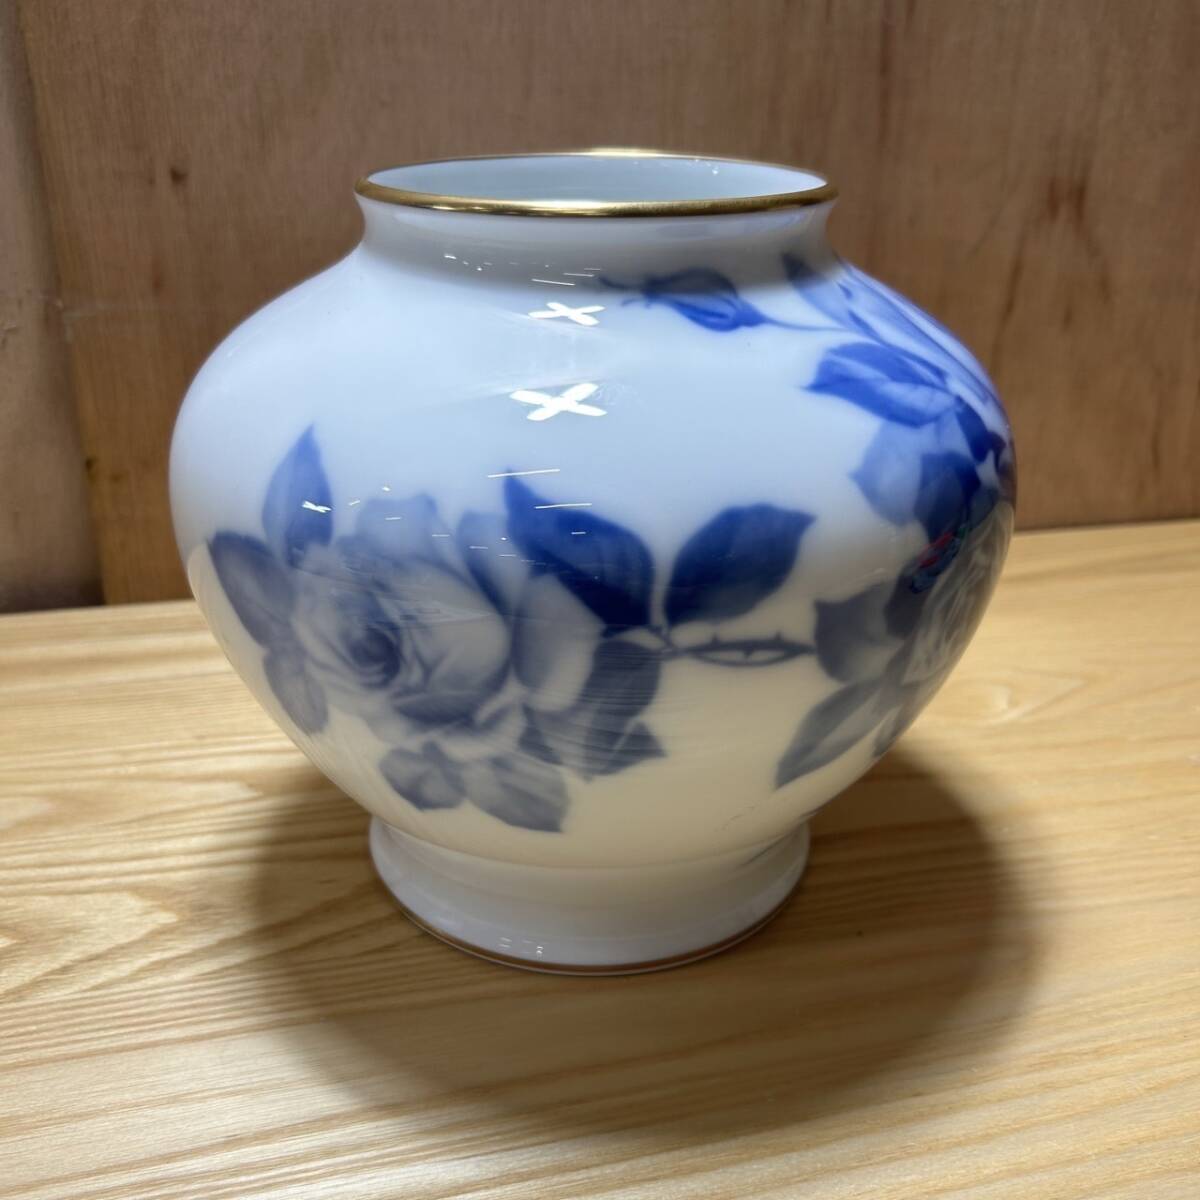 * Ookura Touen голубой rose ваза ваза для цветов изделие прикладного искусства керамика ( б/у товар / текущее состояние товар / хранение товар )*